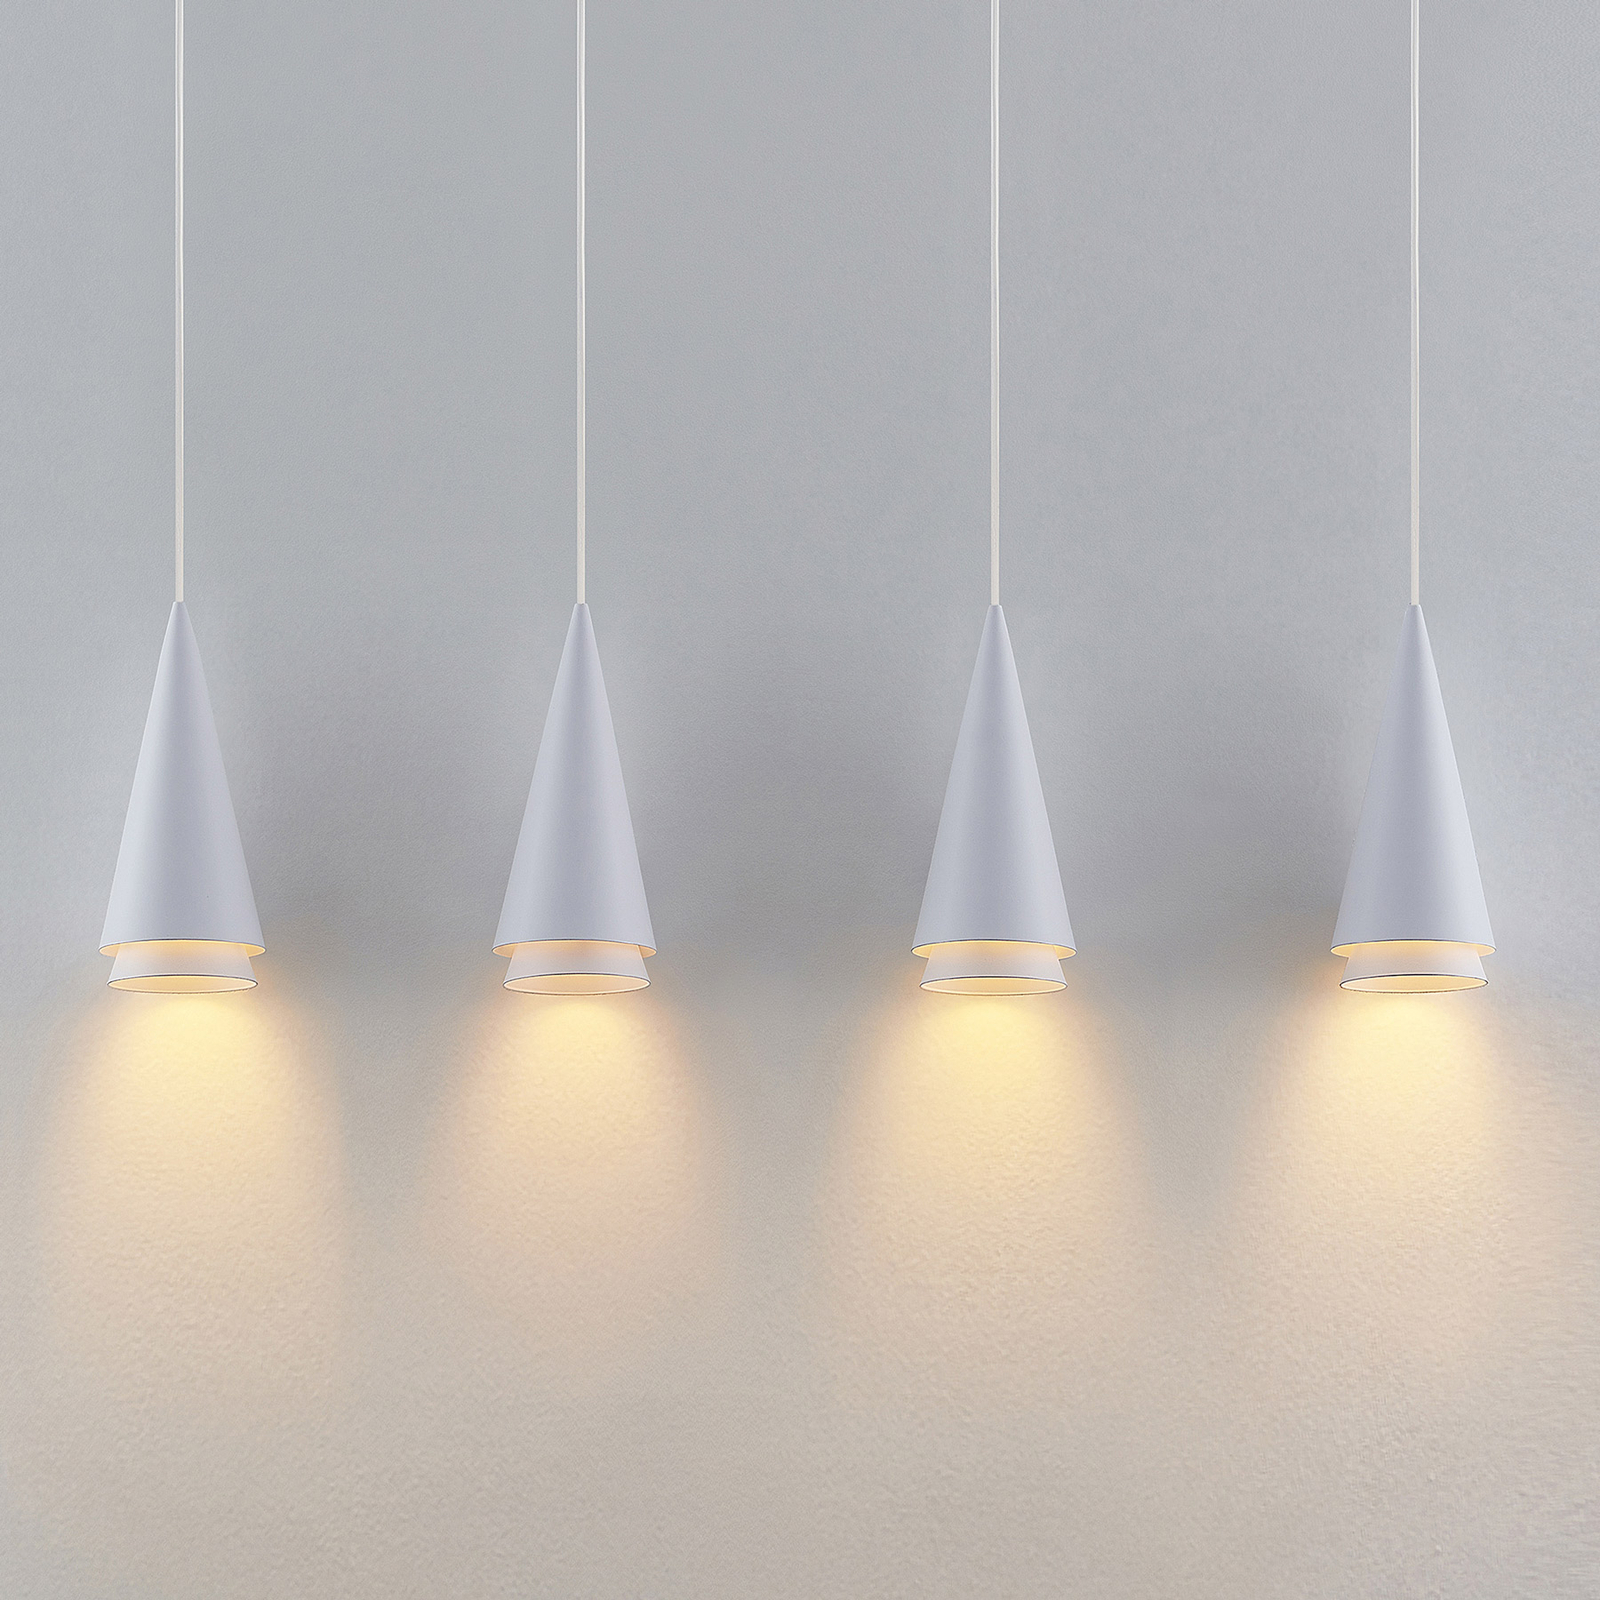 Lucande Naoh hanging light, 4-bulb, white